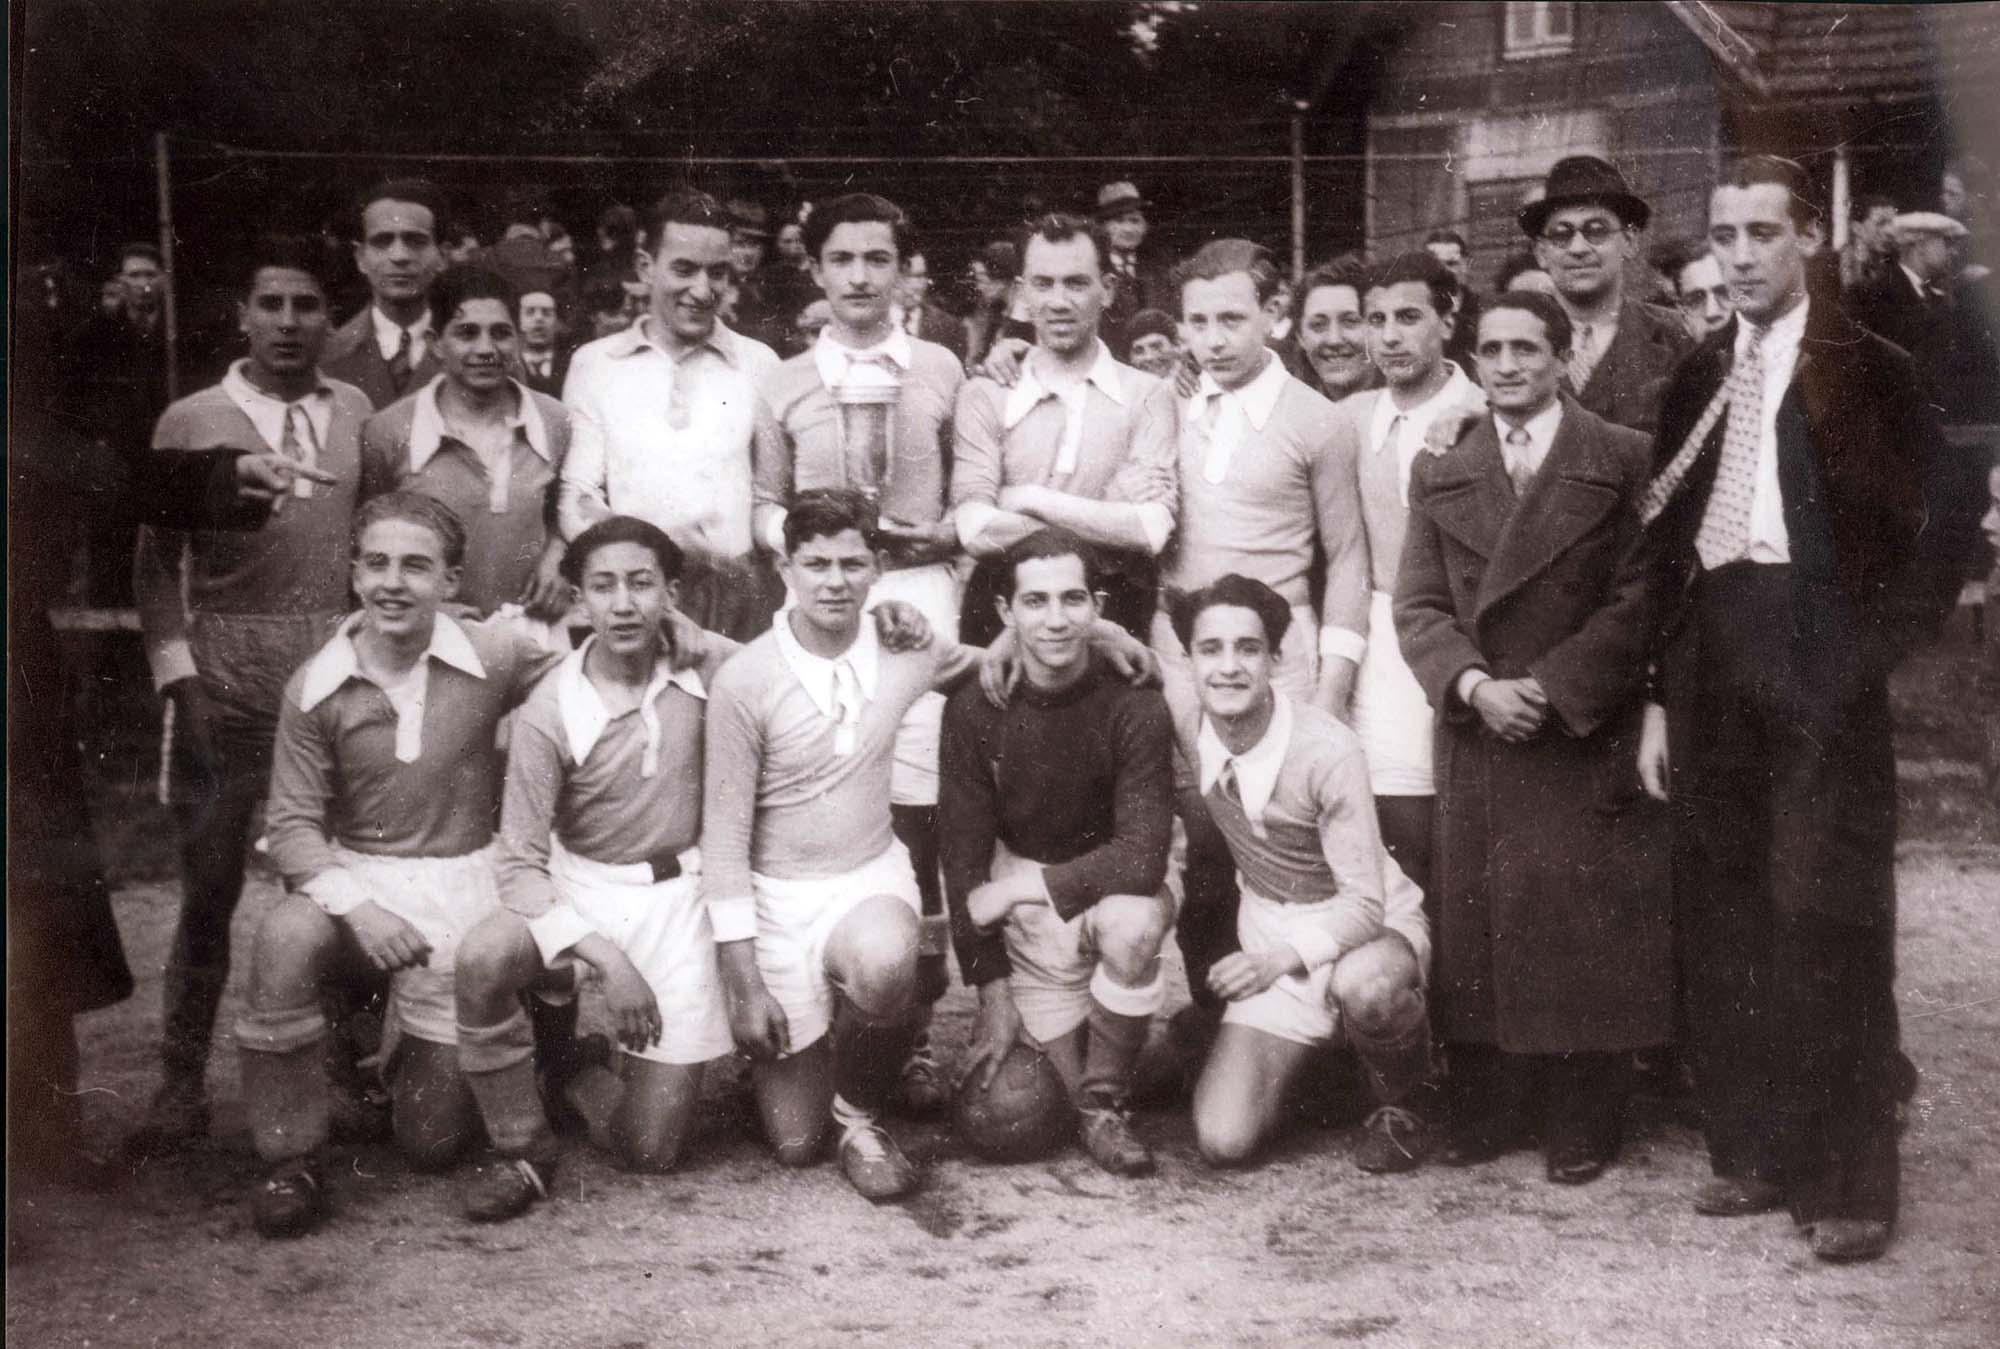 Франция, 1937. Еврейская футбольная команда, членом которой был Витали Лемор, приславший эту фотографию